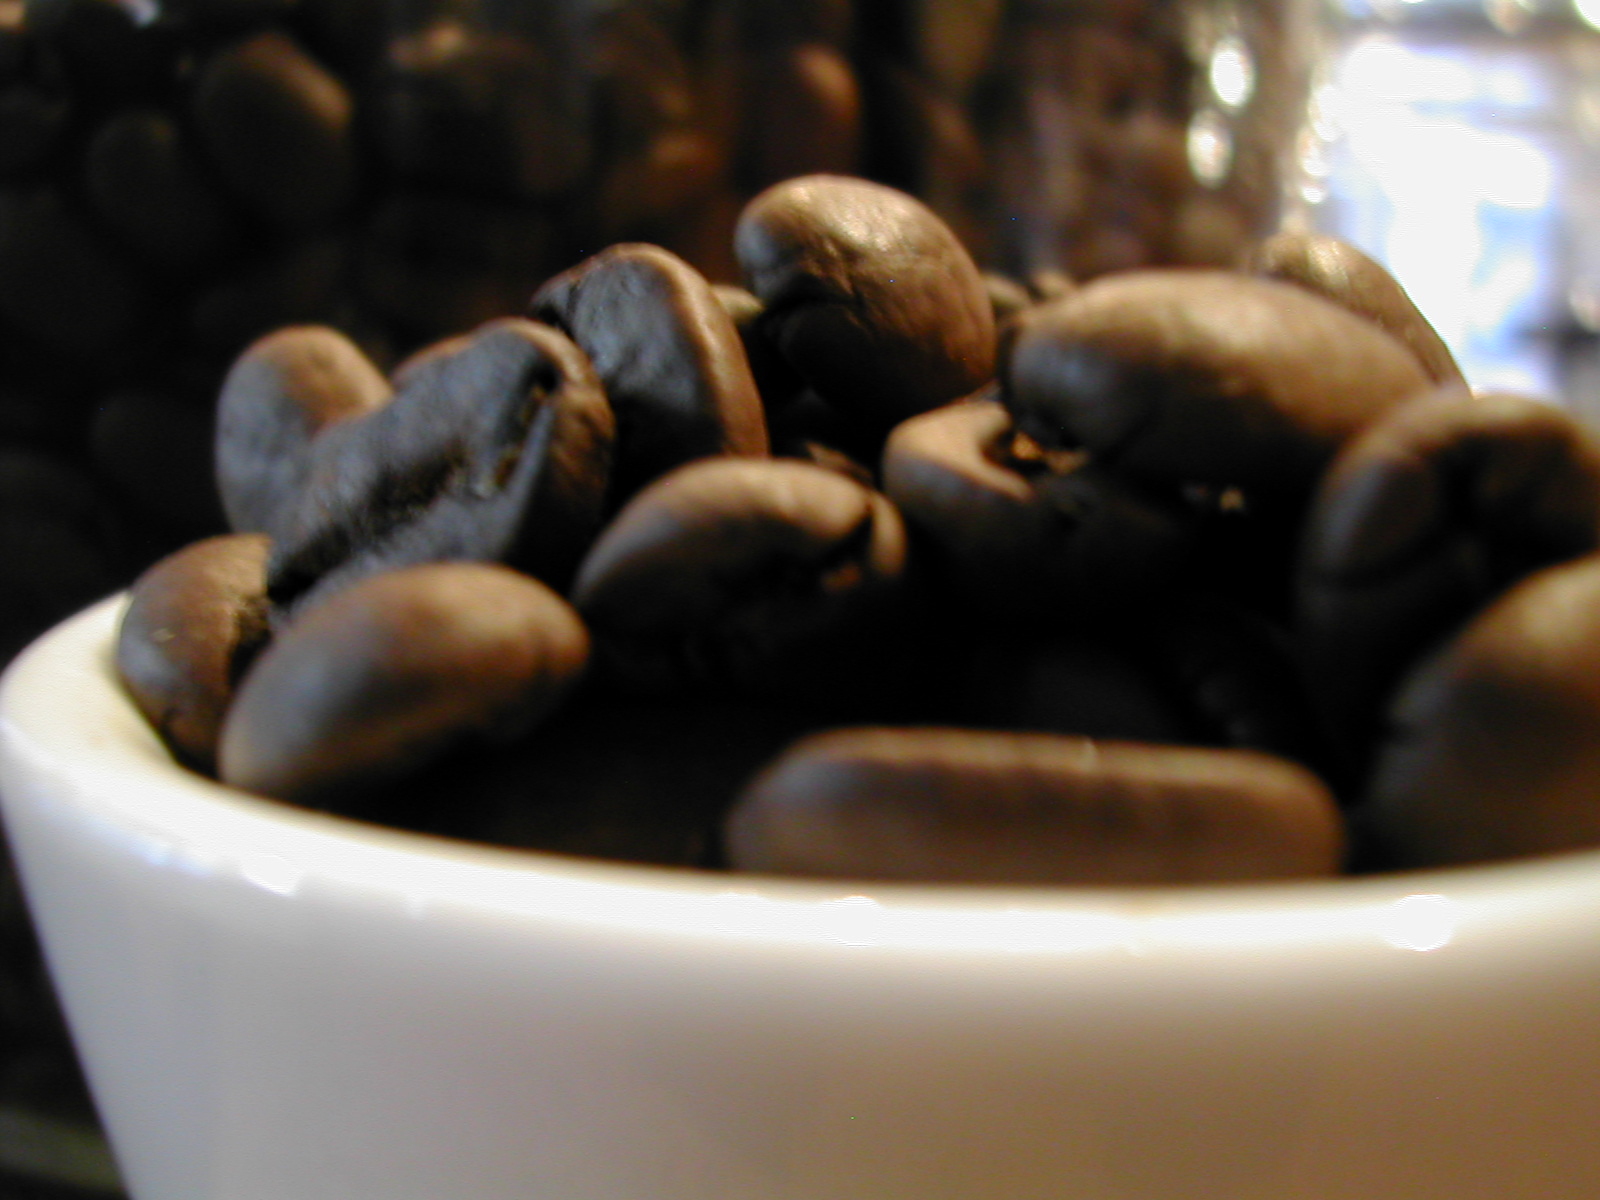 日本産 コーヒー豆 マンデリン ビッグアチェG-1 Mandheling- スマトラ島北部 迅速な対応で商品をお届け致します アチェ地区２００g100gあたり￥580-Sumatra